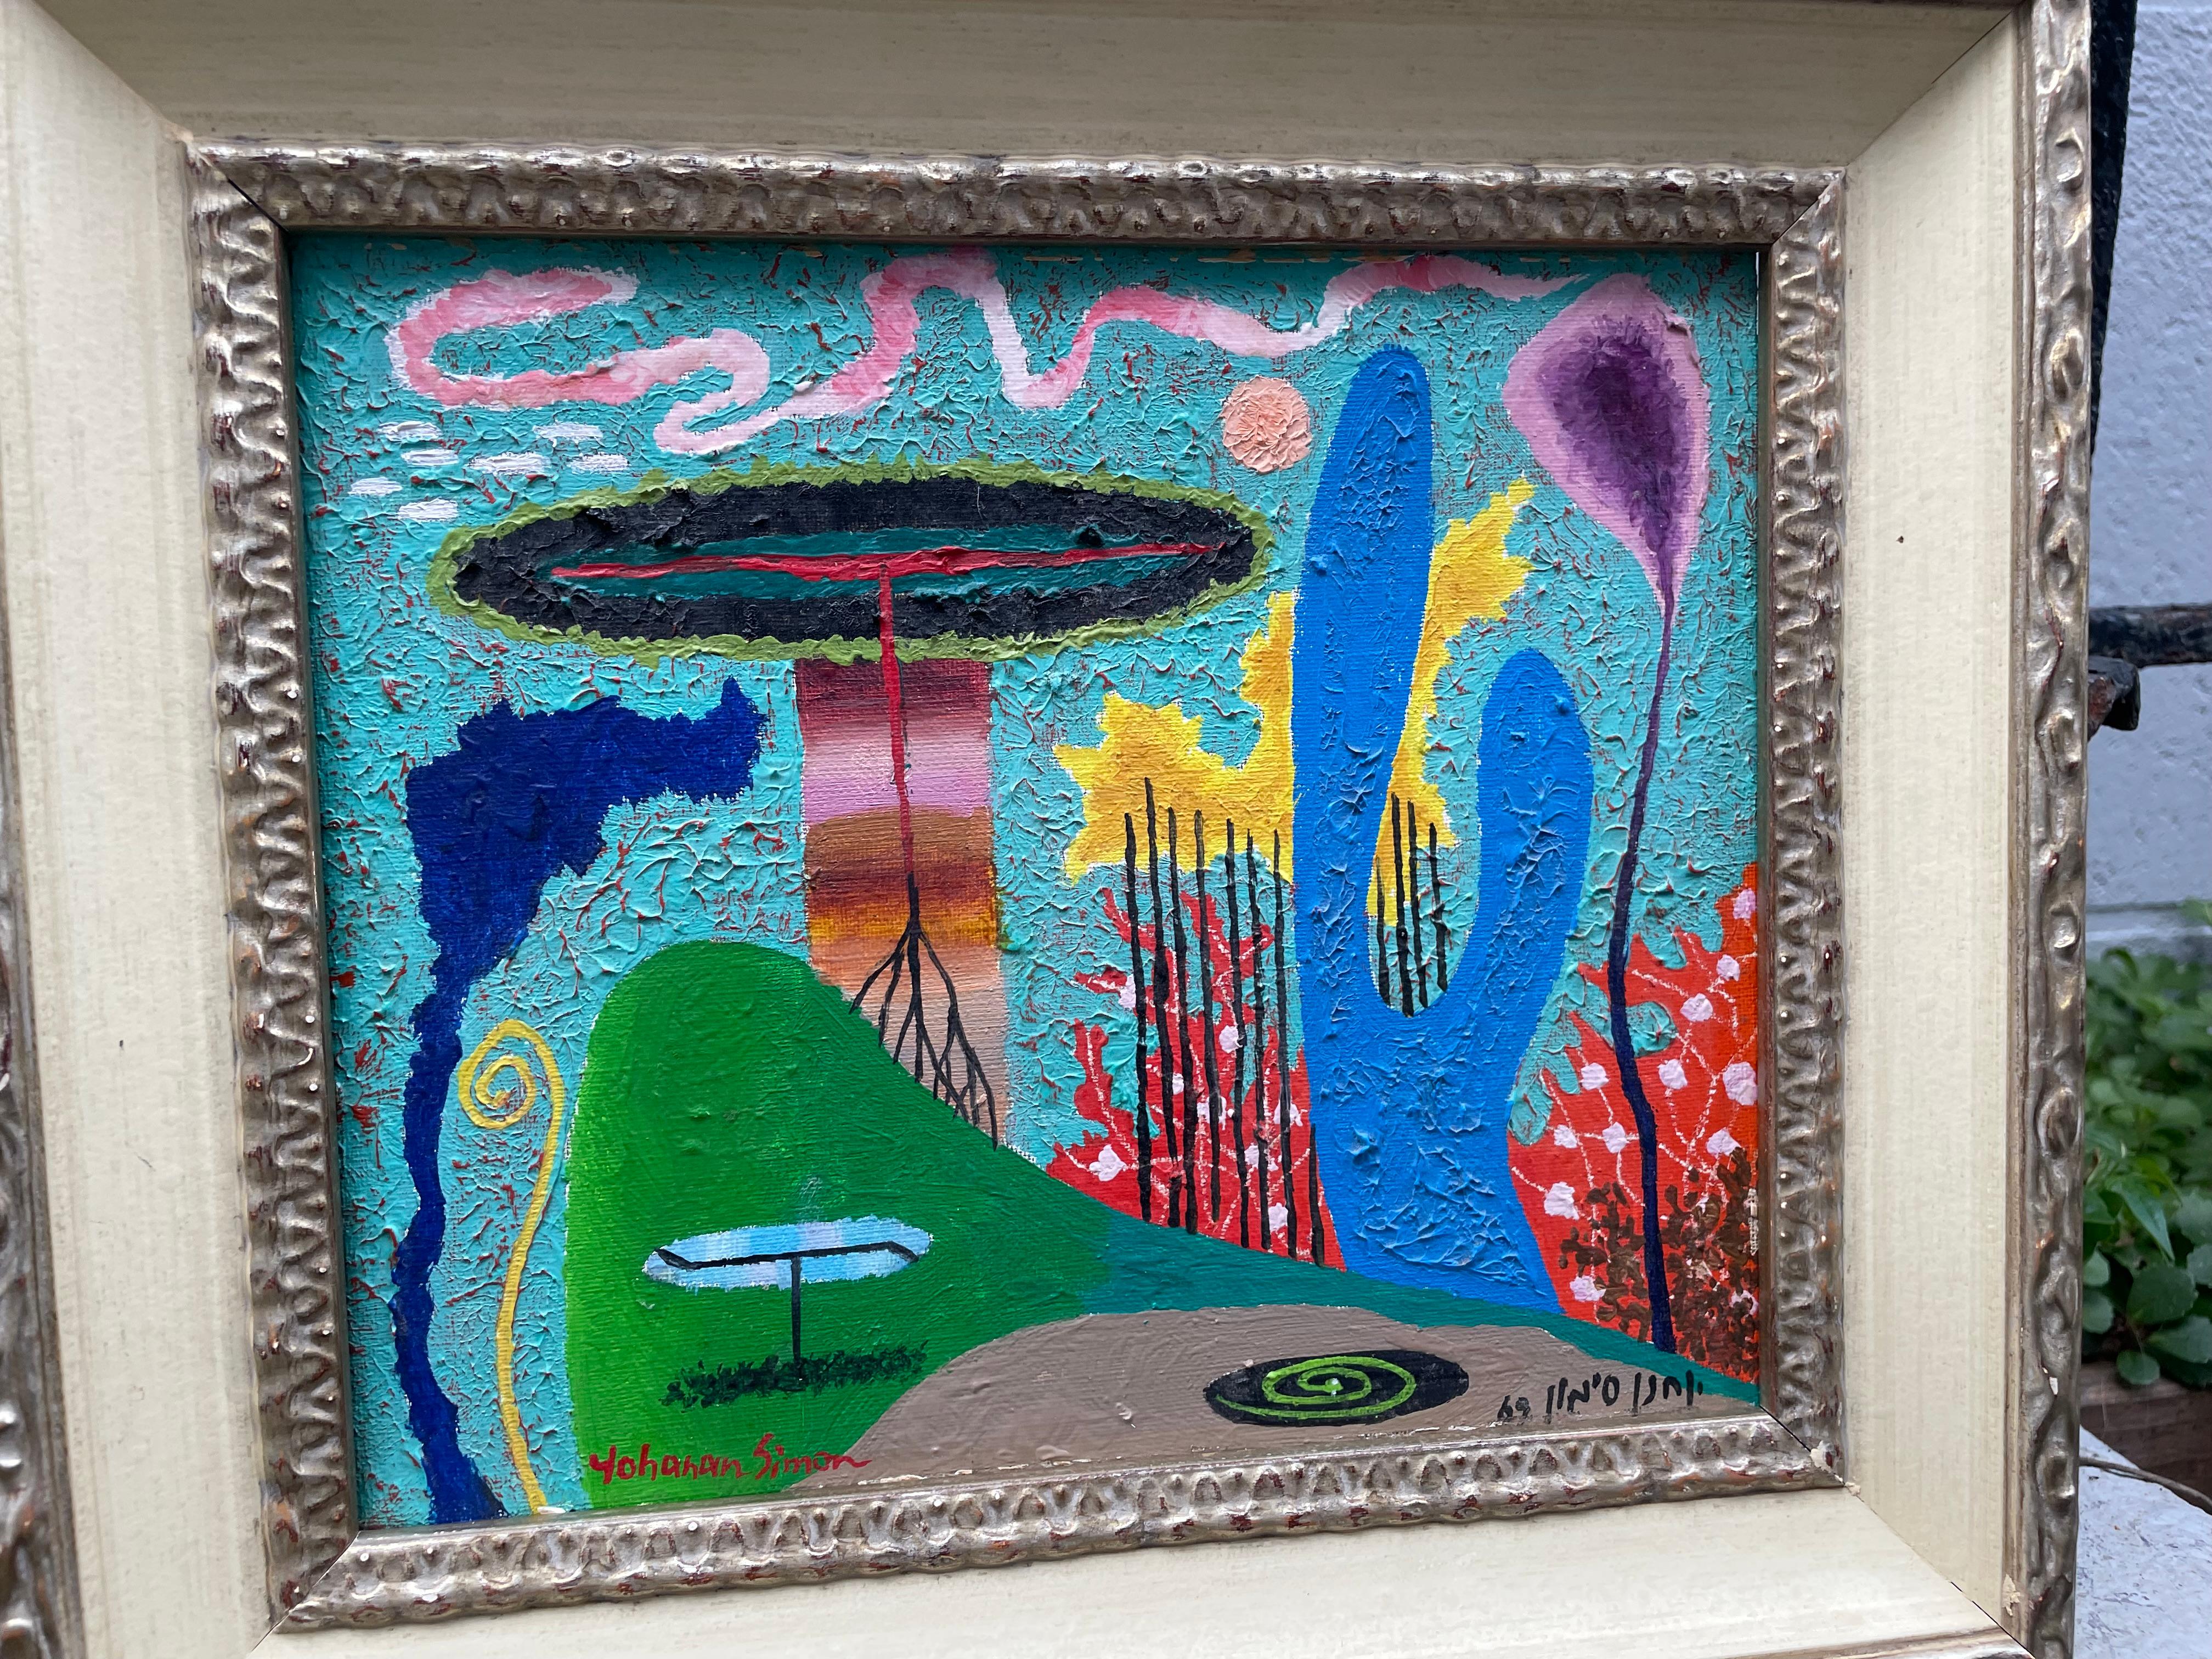 Fantastique peinture à l'huile de paysage colorée de l'artiste israélien bien connu Simon 1